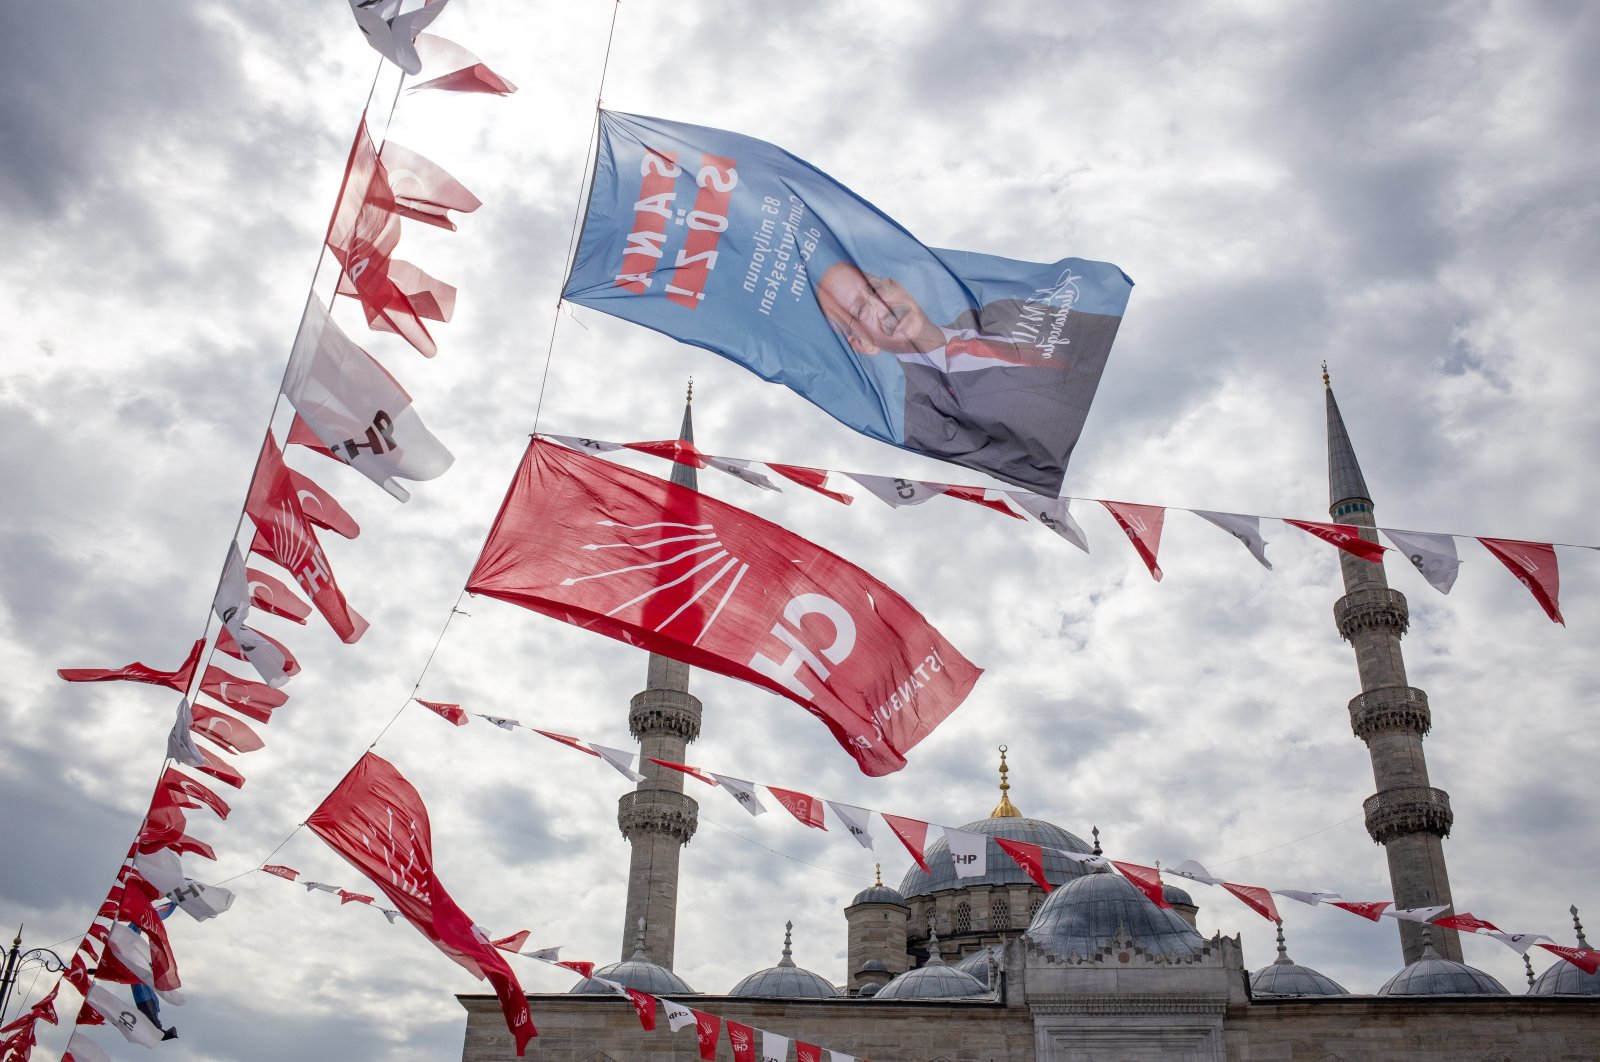 Wacana ‘Meja untuk 16’, memperdalam krisis oposisi Turki